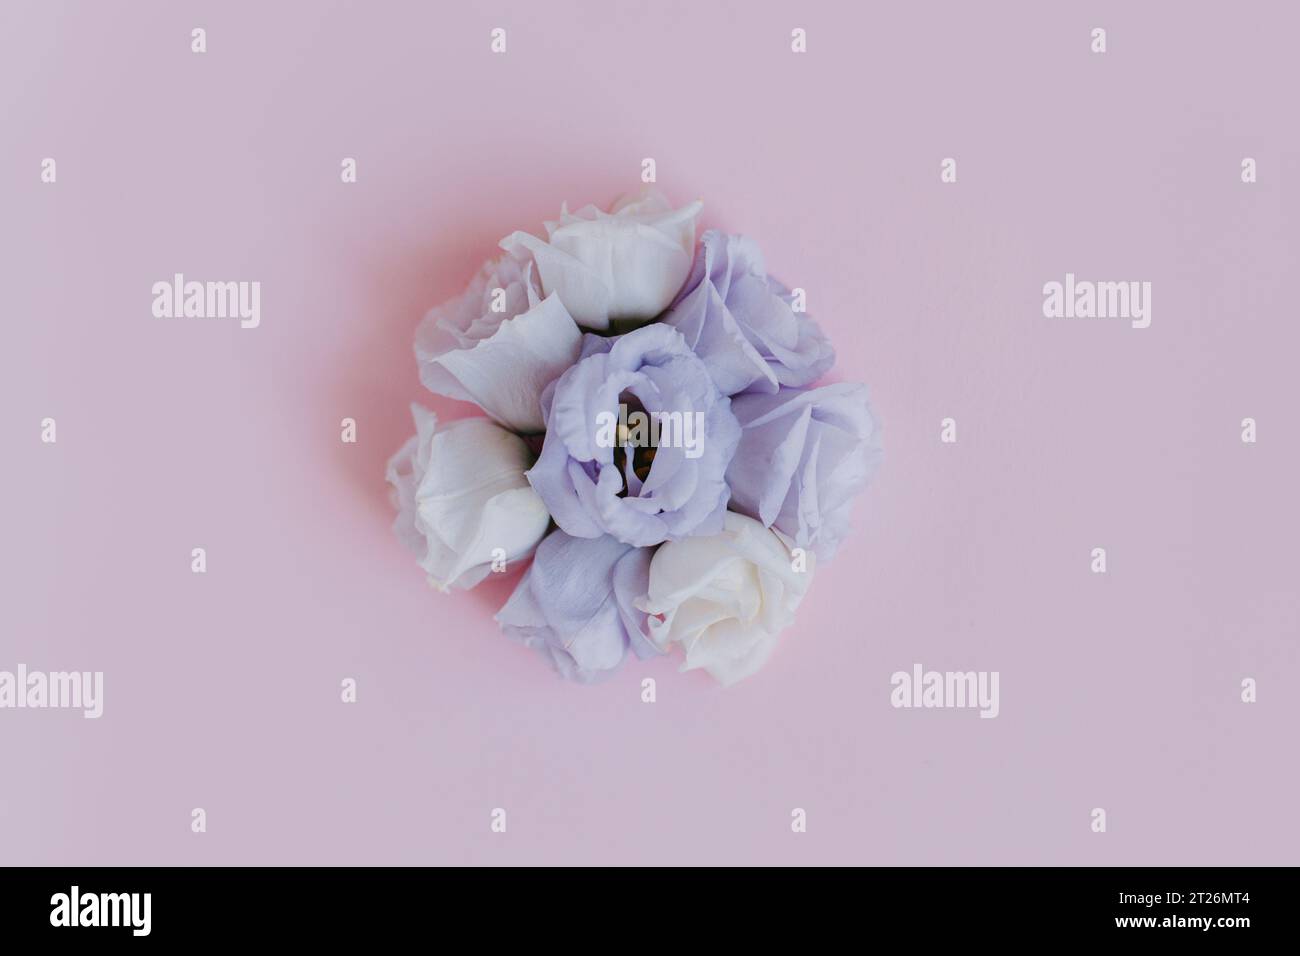 Belles fleurs blanches et violettes Eustoma (Lisianthus) sur un fond rose pastel. Placer pour le texte. Banque D'Images